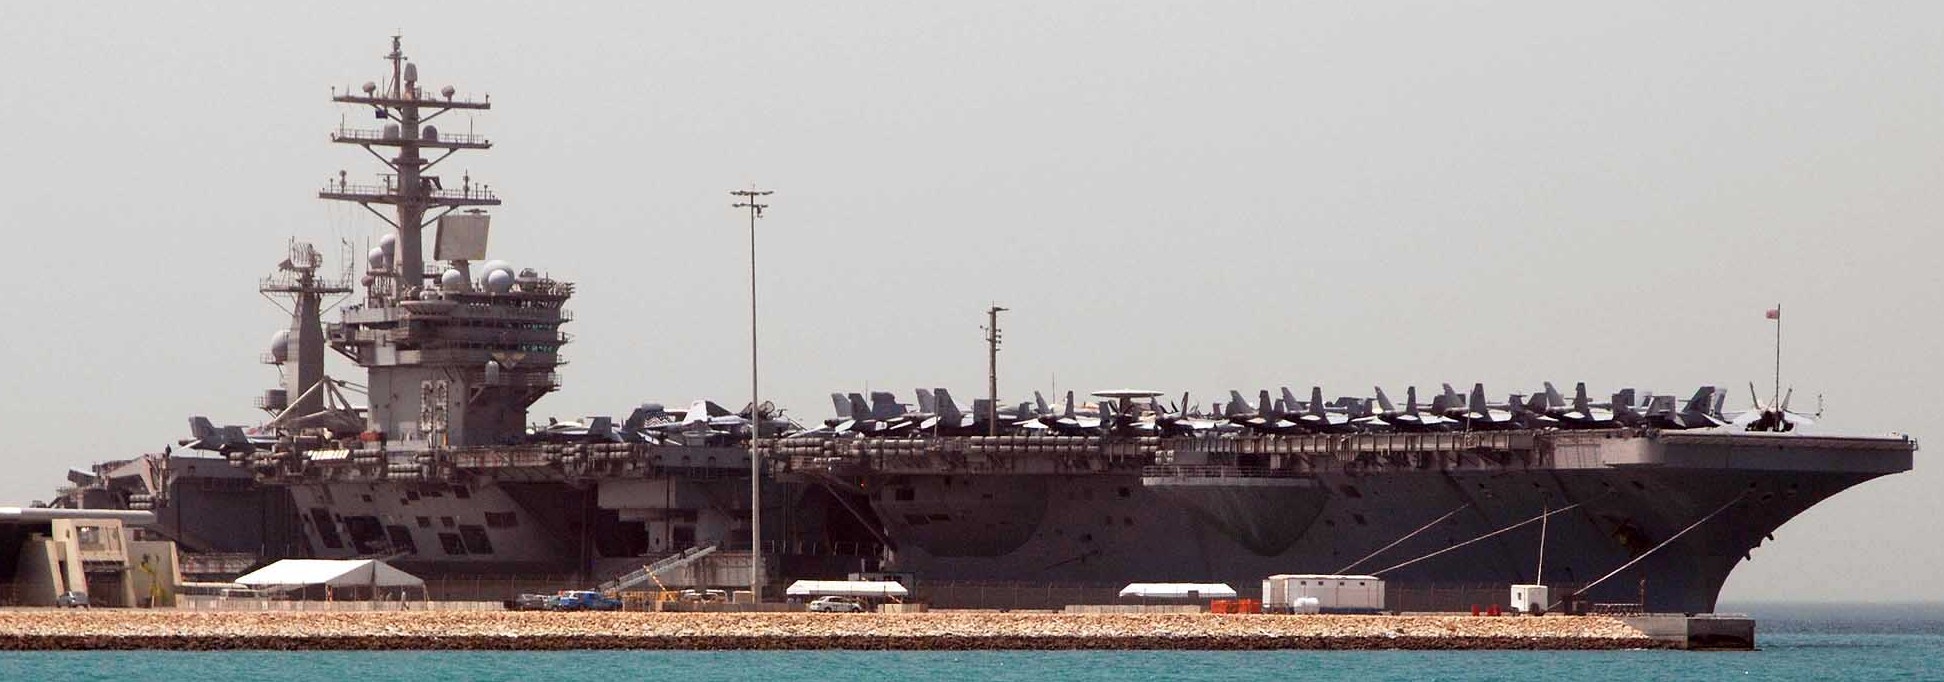 cvn-69 uss dwight d. eisenhower aircraft carrier air wing cvw-7 us navy manama bahrain 397